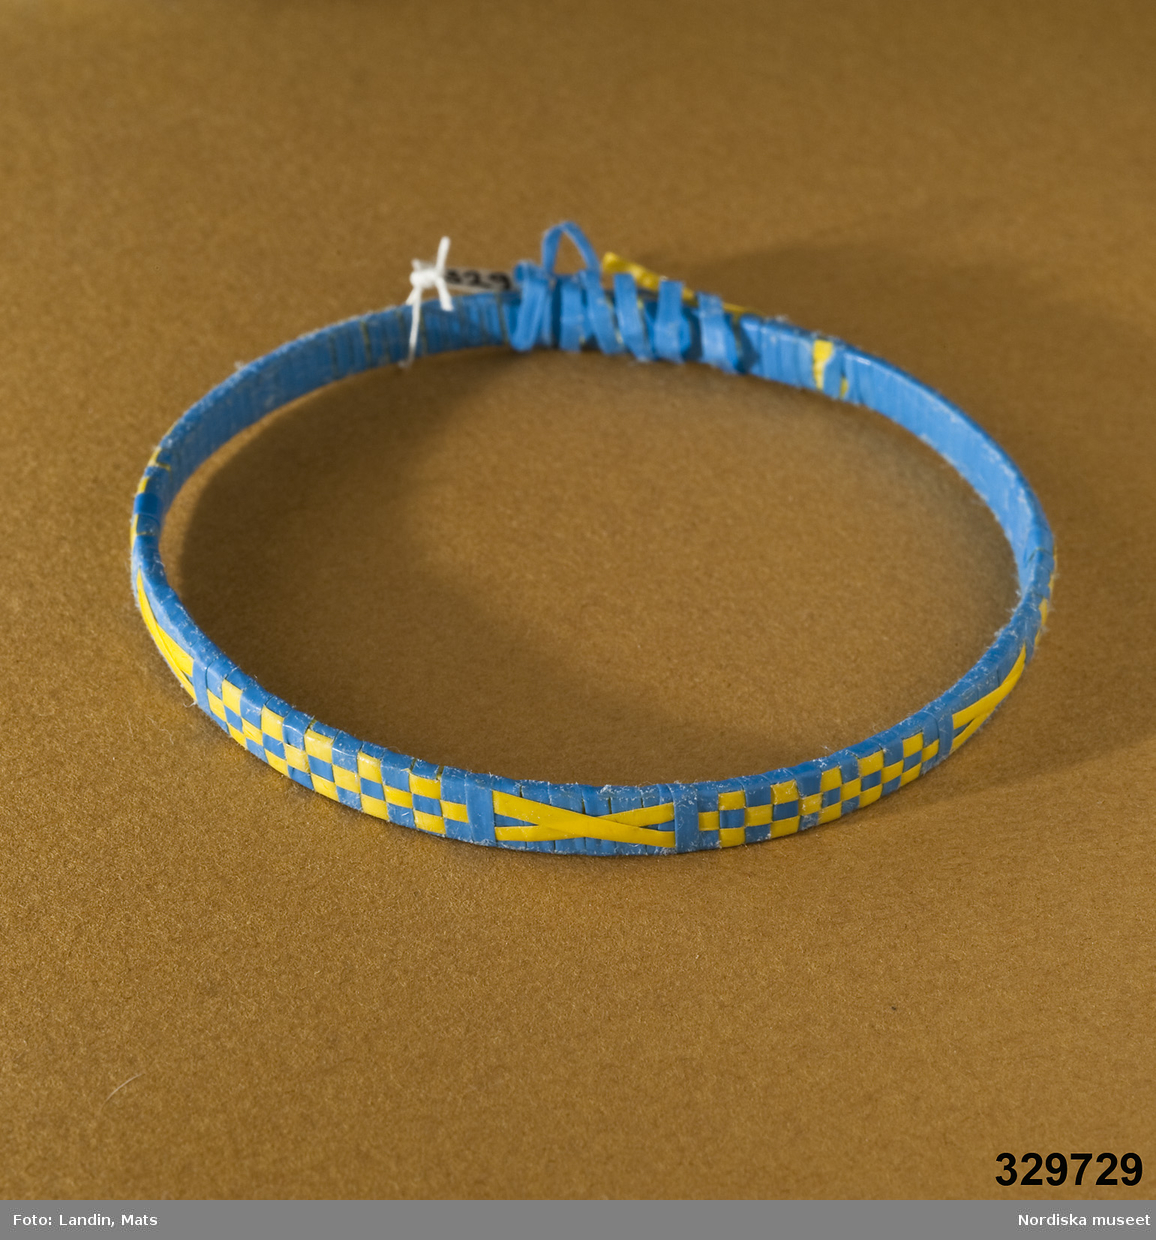 Runt armband med mönster vävt av tunna plastband. Mönster i form av gula/blå rutor och kryss. Afrikanska influenser.
Inv.nr 329.728-329.730 är likadana.
Anm.: Bandet har släppt på ett ställe.
/Zingoalla Rosenqvist 2009-02-05